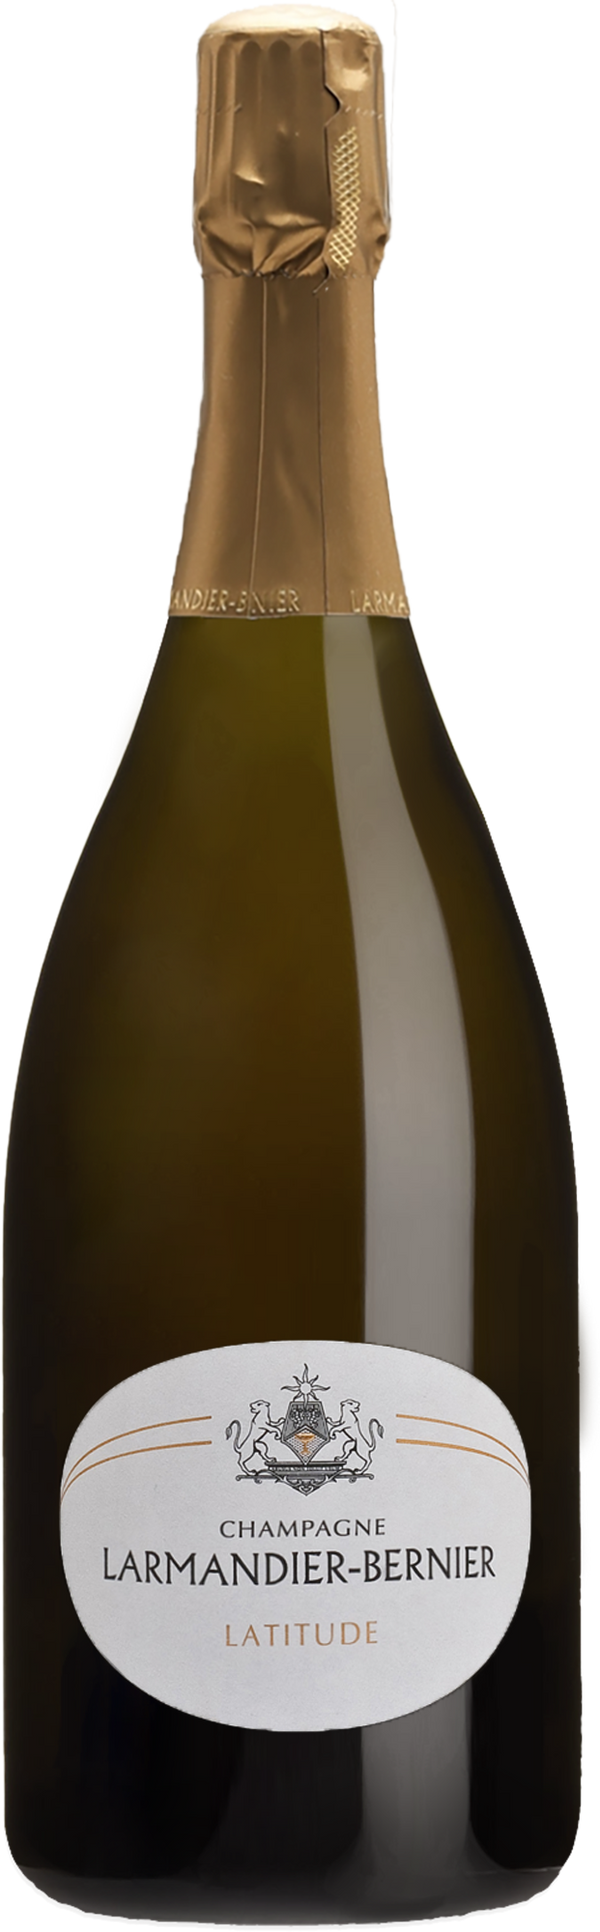 Champagne Larmandier-Bernier Latitude Blanc de Blancs NV (Base 18. Disg. Apr 2020) (1500ml)